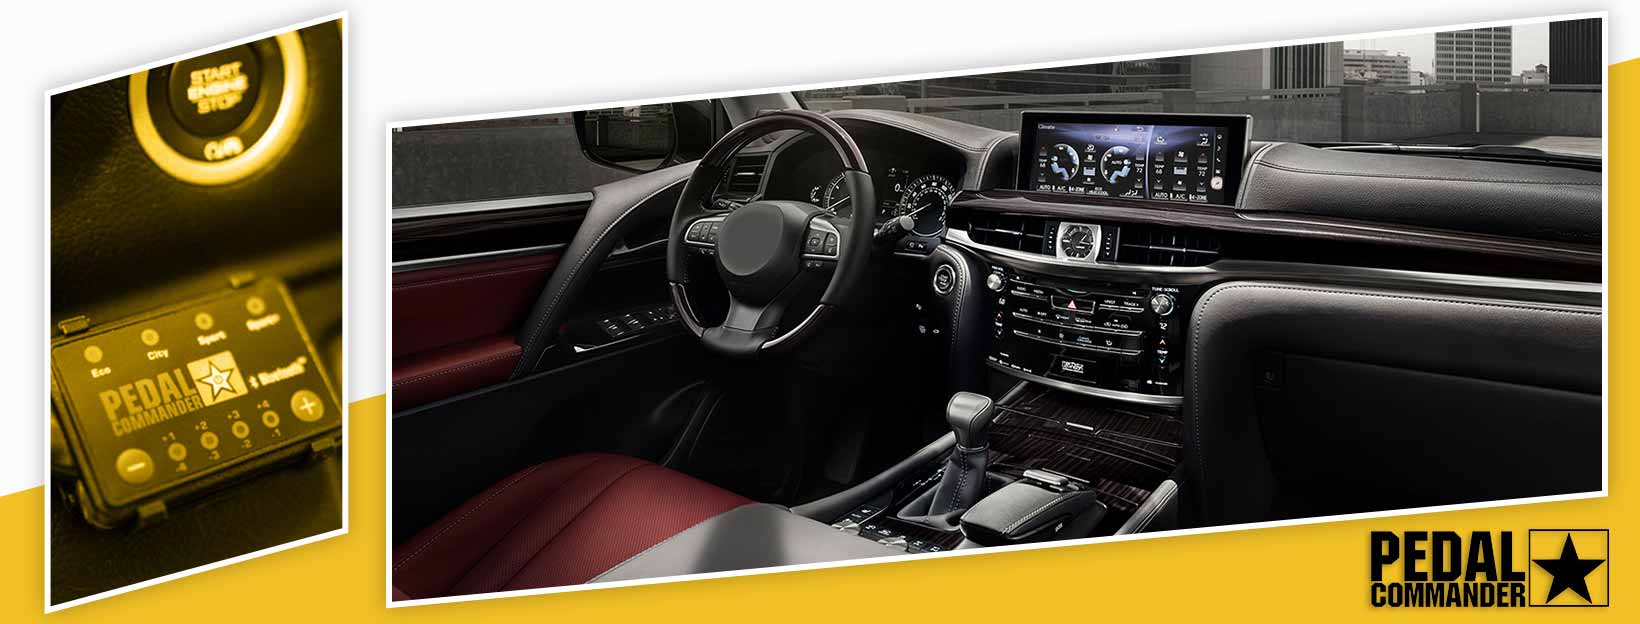 Pedal Commander for Lexus LX - interior